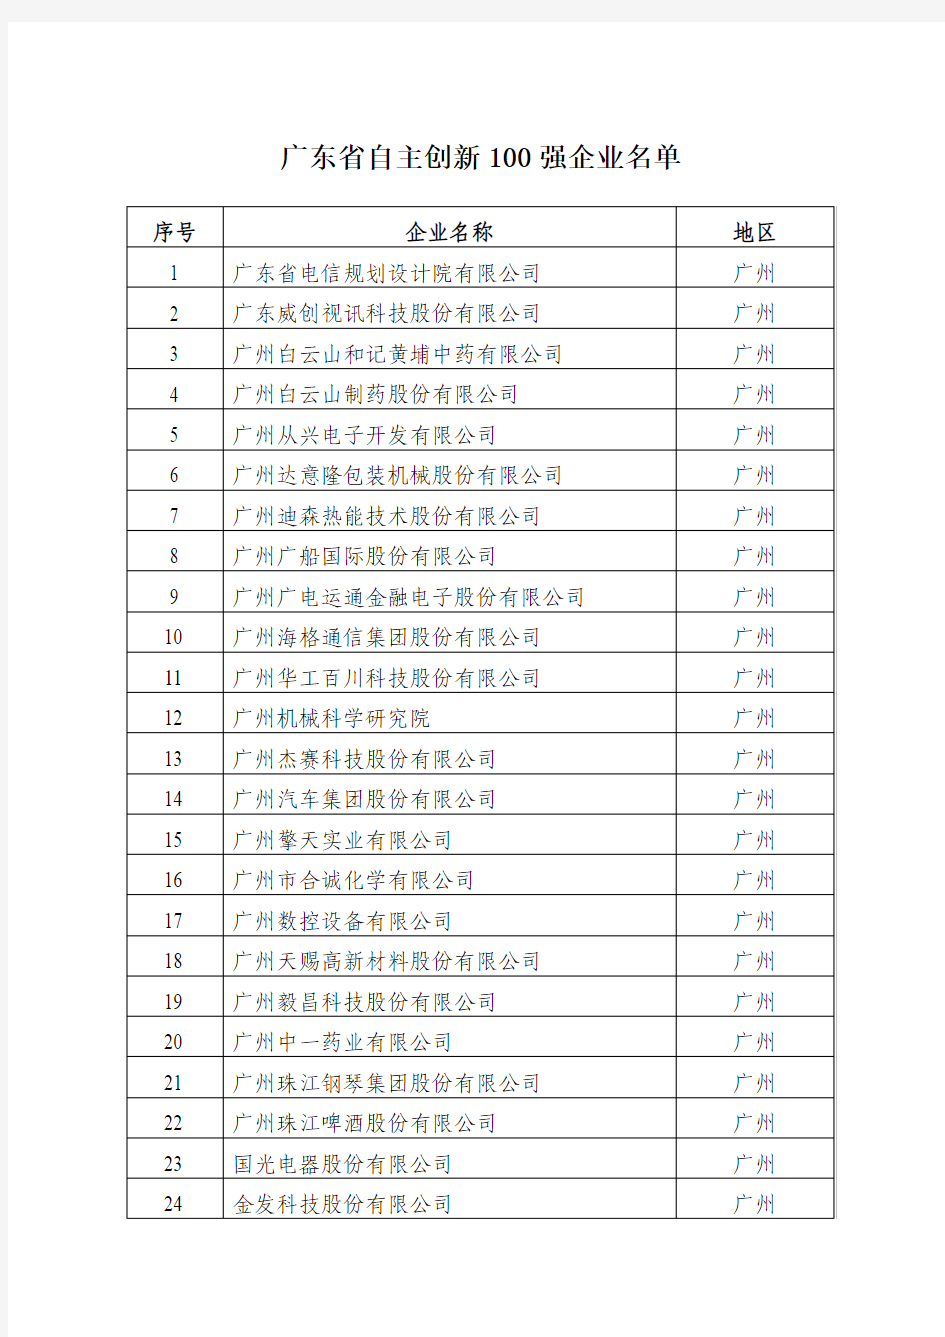 广东省自主创新100强企业名单